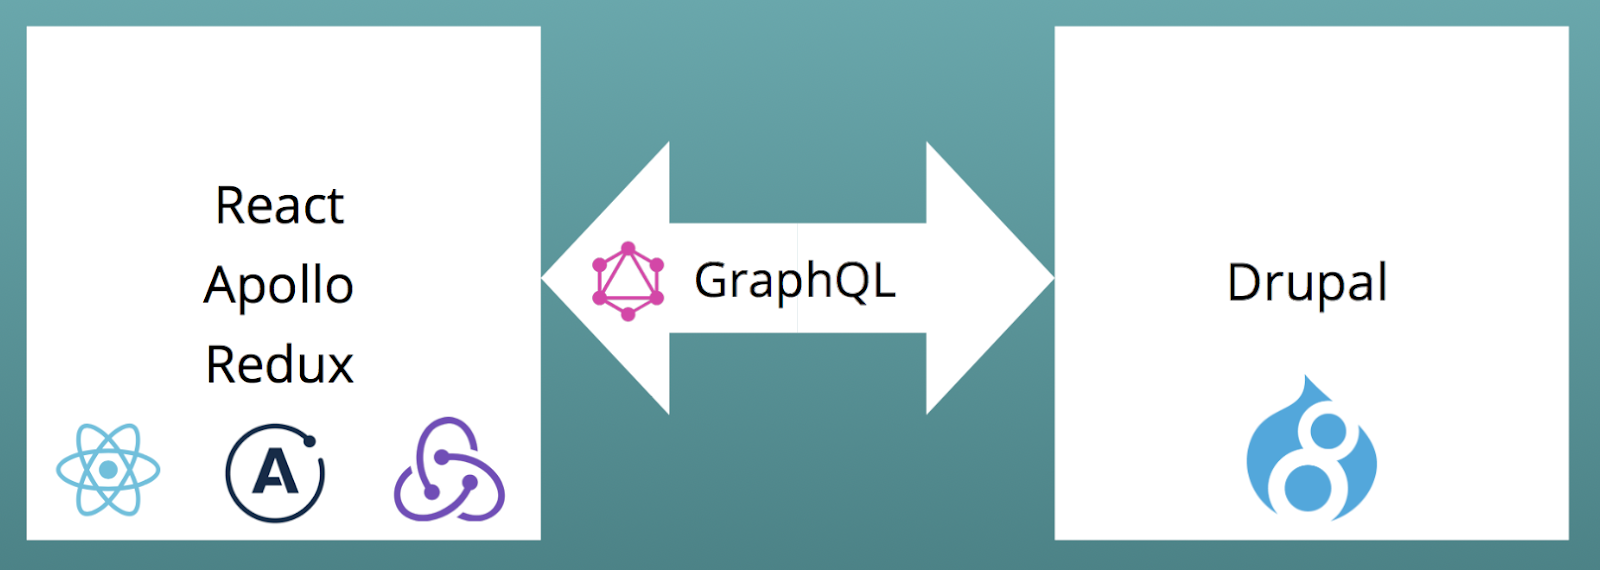 DrupalCon Baltimore: Drupal, React and GraphQL